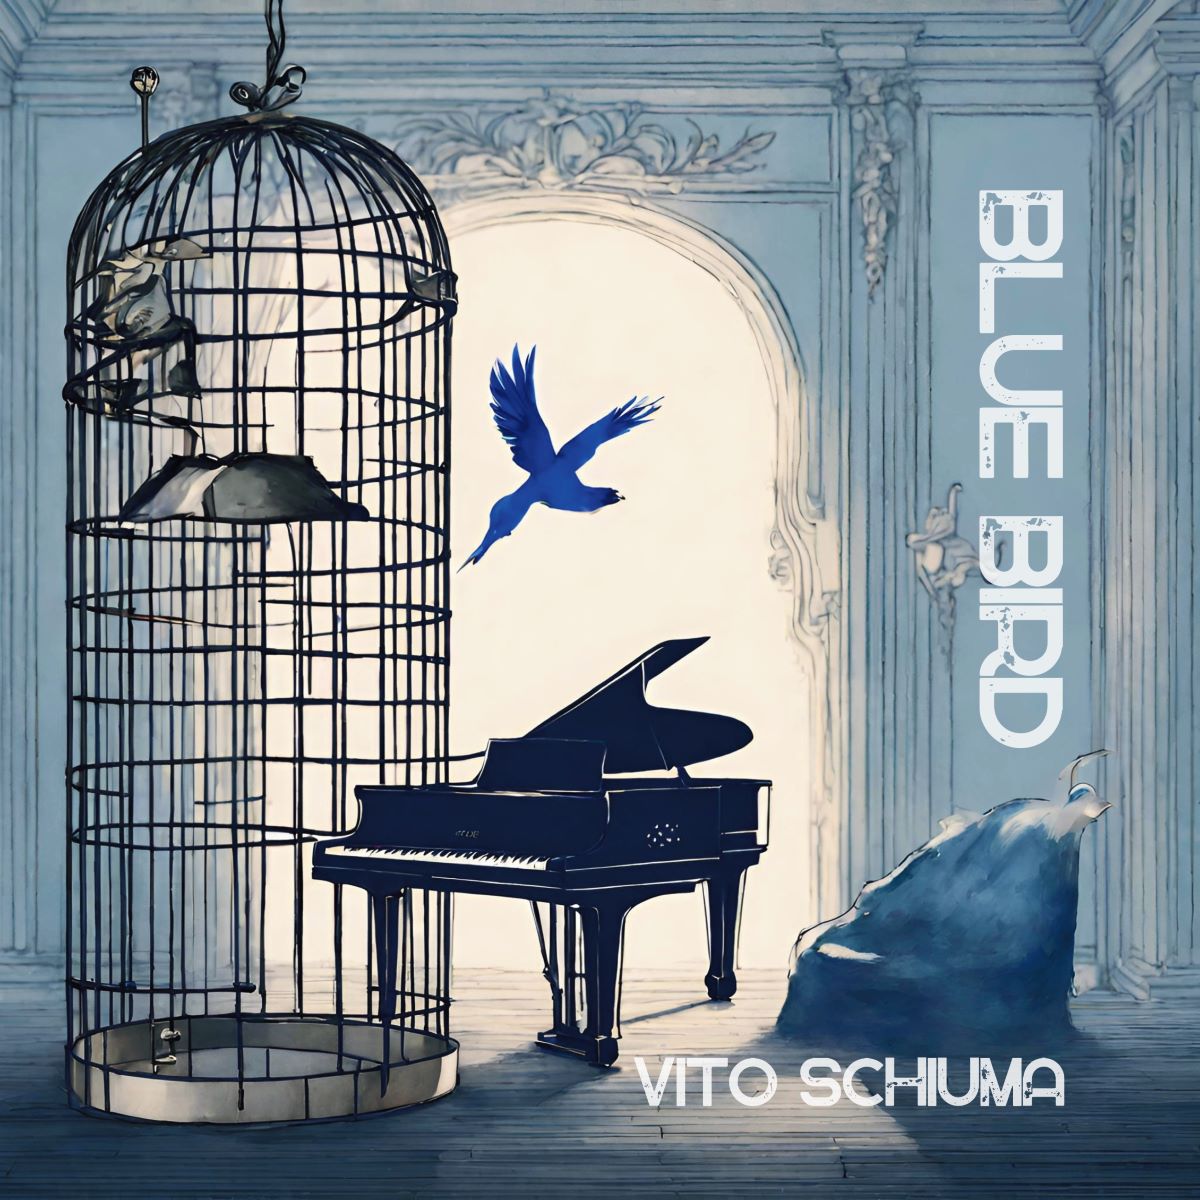 Vito Schiuma - Il singolo “Blue Bird”